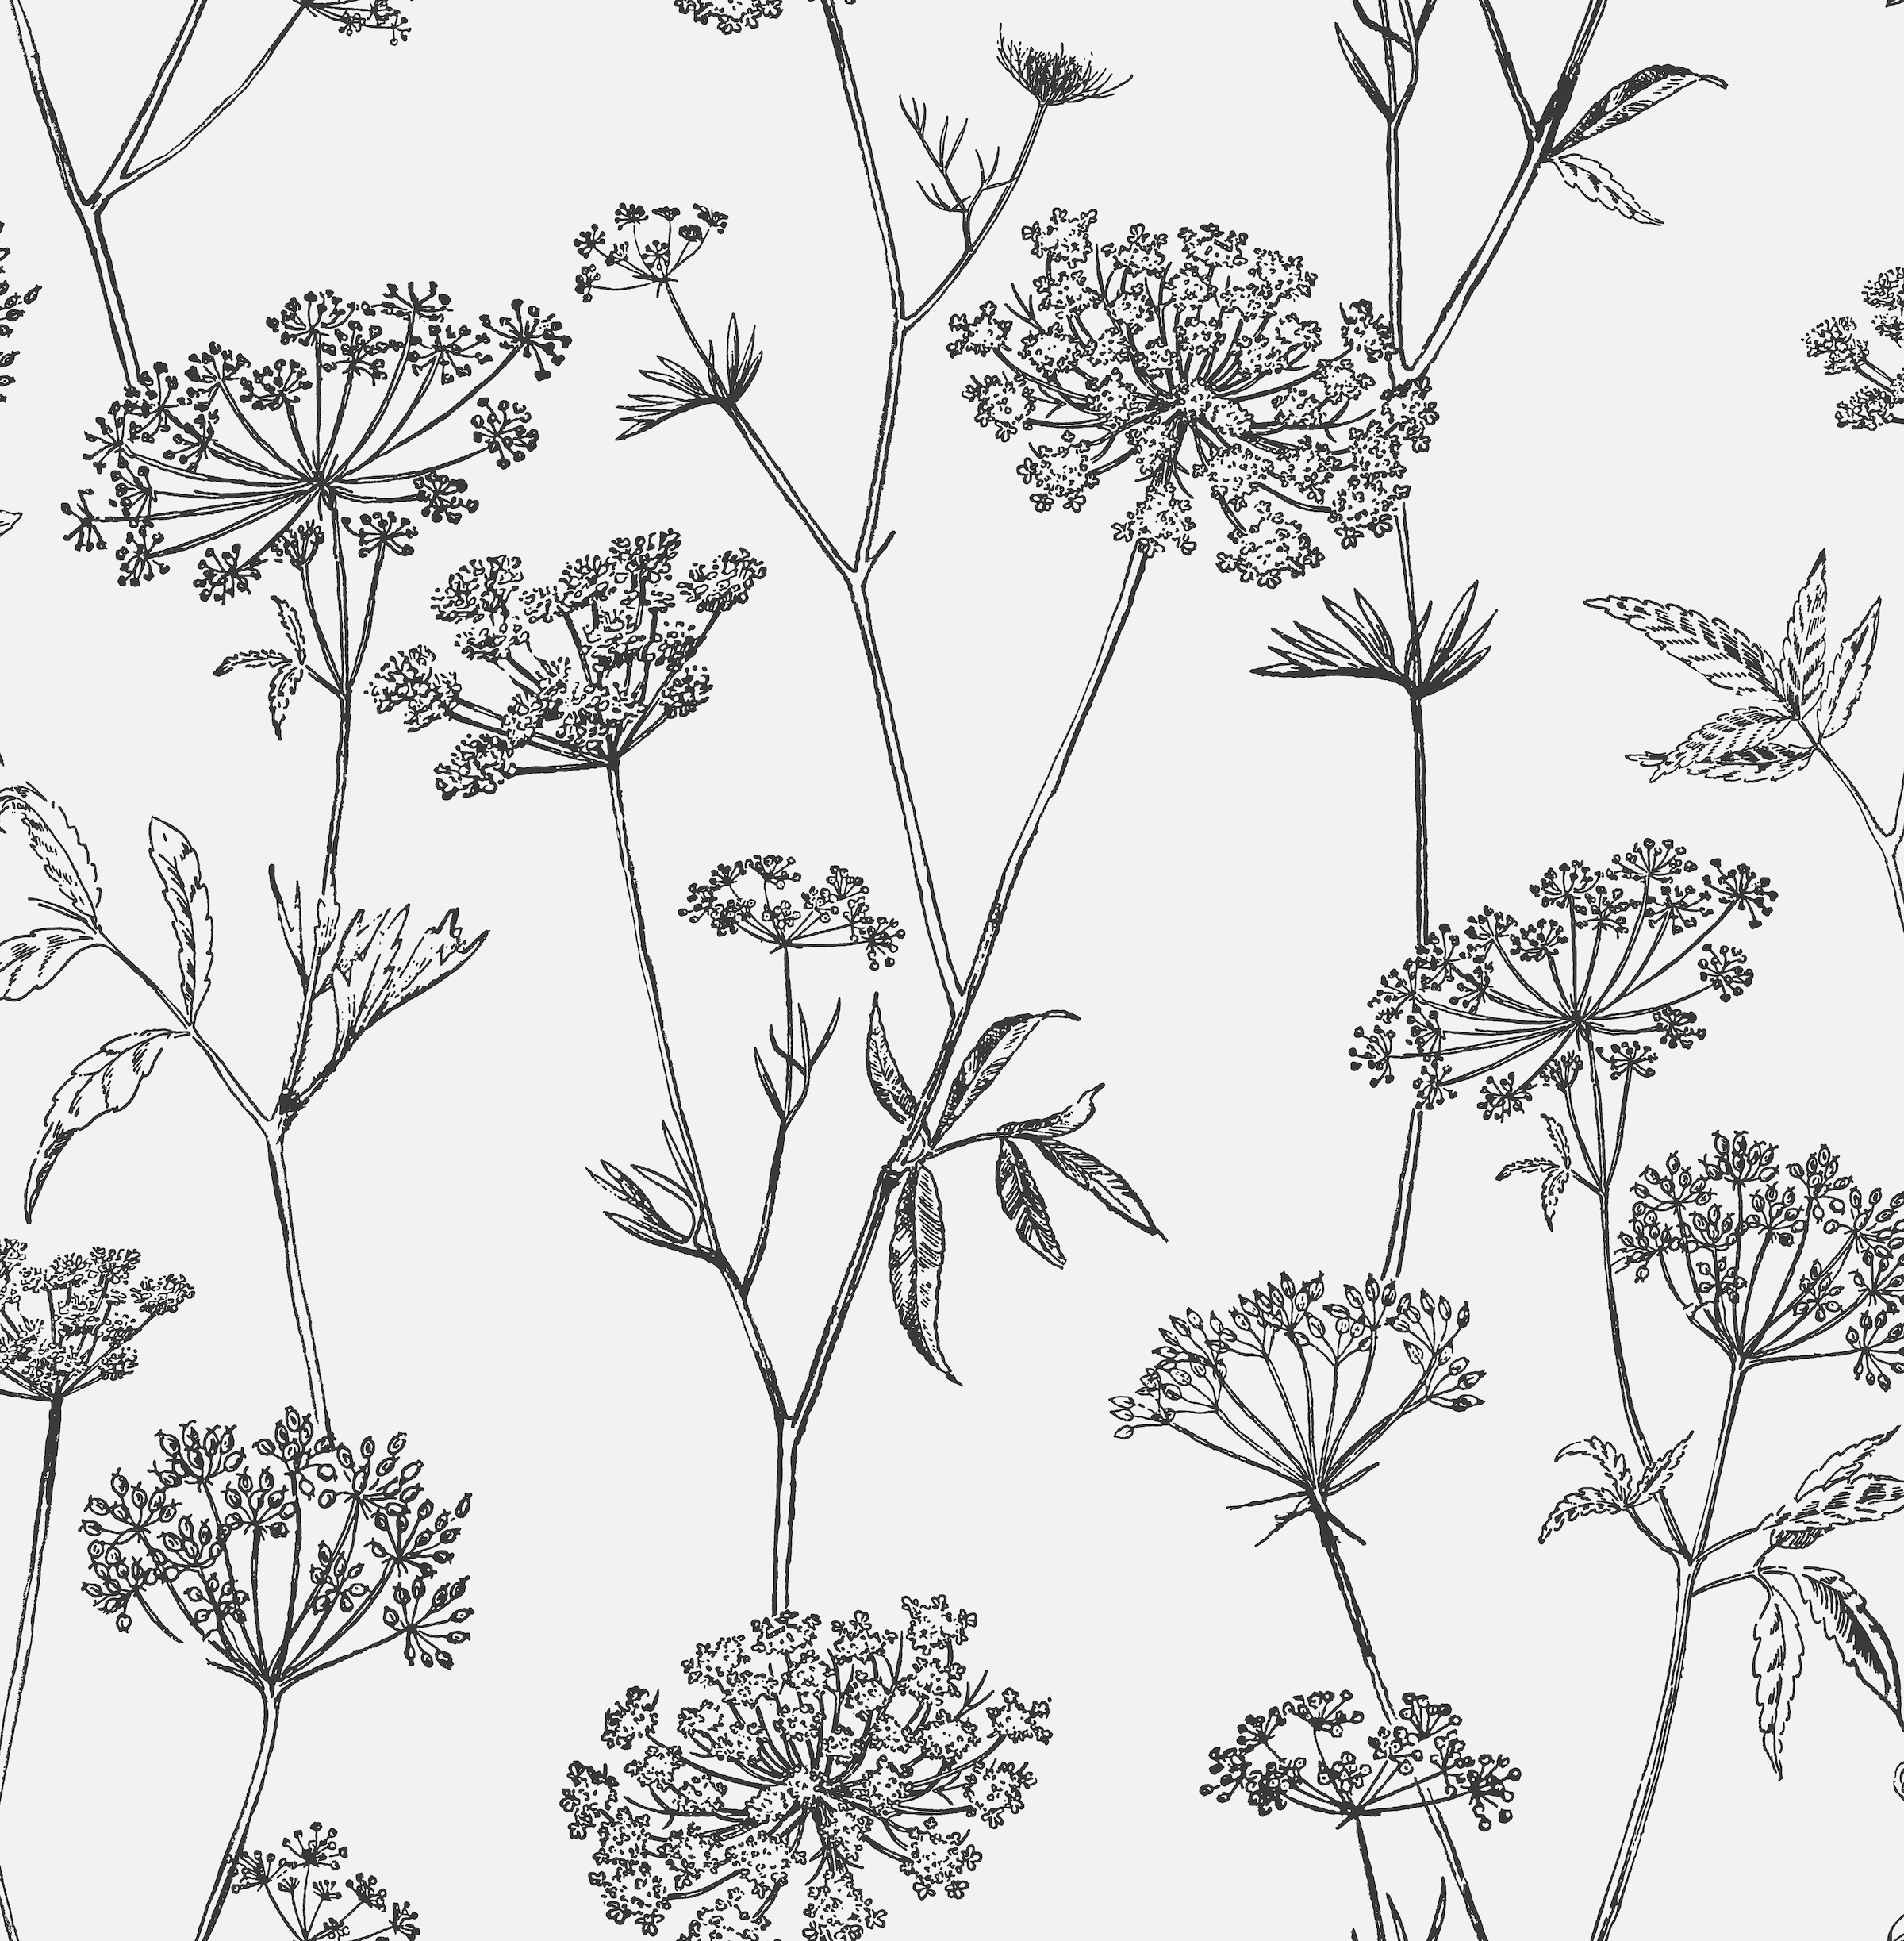 Vliestapete »Blumen«, Weiss/Schwarz - 10mx52 cm